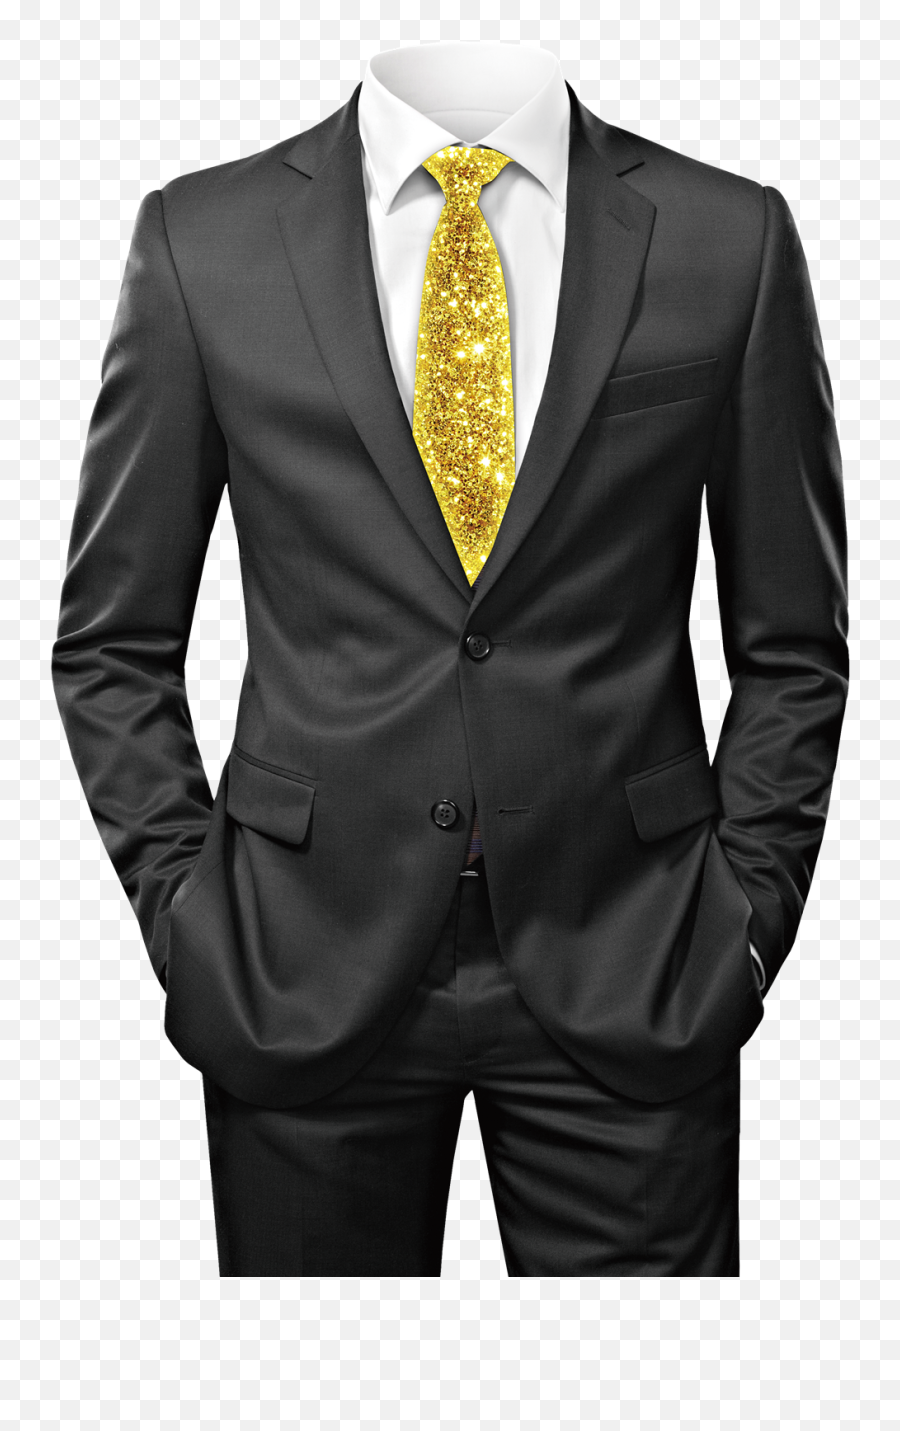 Coat Png Transparent Images Man Suit Png No Head Suit And Tie Png Free Transparent Png Images Pngaaa Com - roblox suit no tie